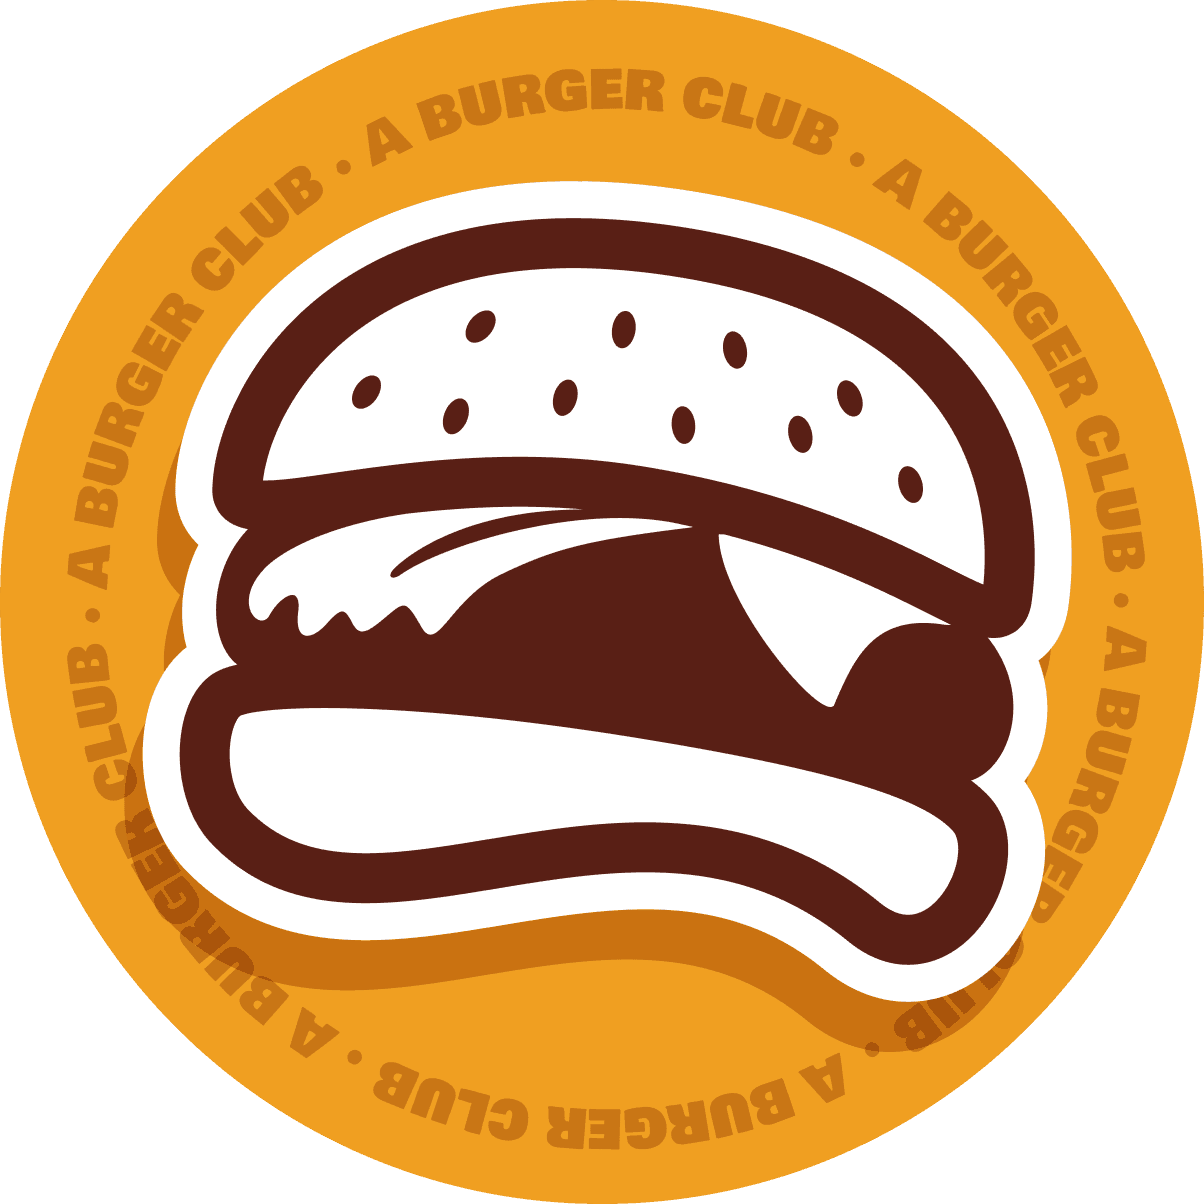 A Burger Club